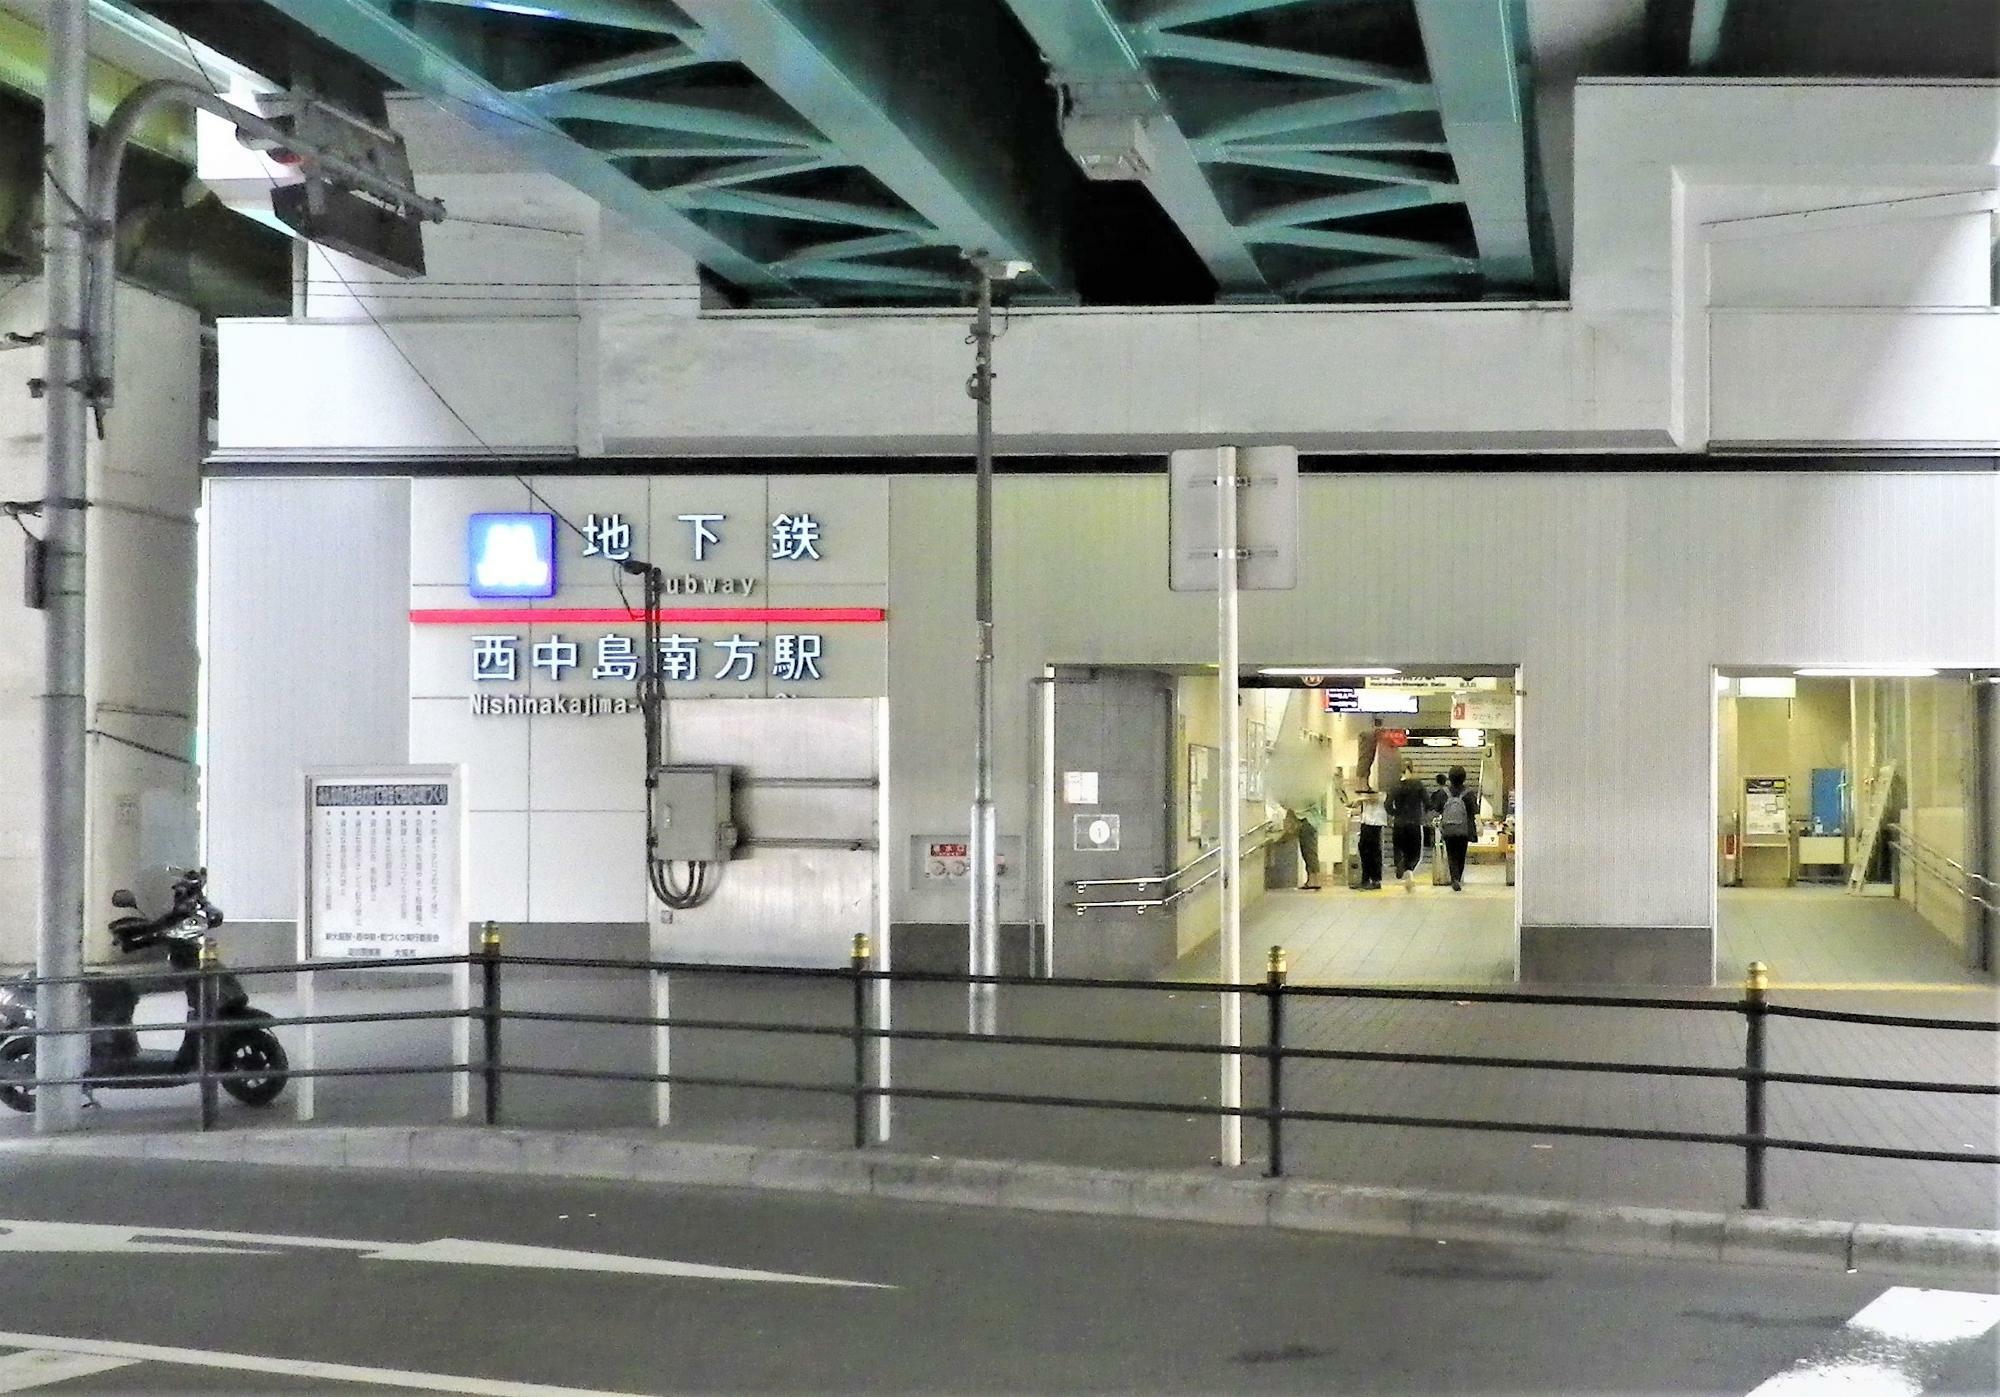 大阪メトロ御堂筋線西中島南方駅の北出口。